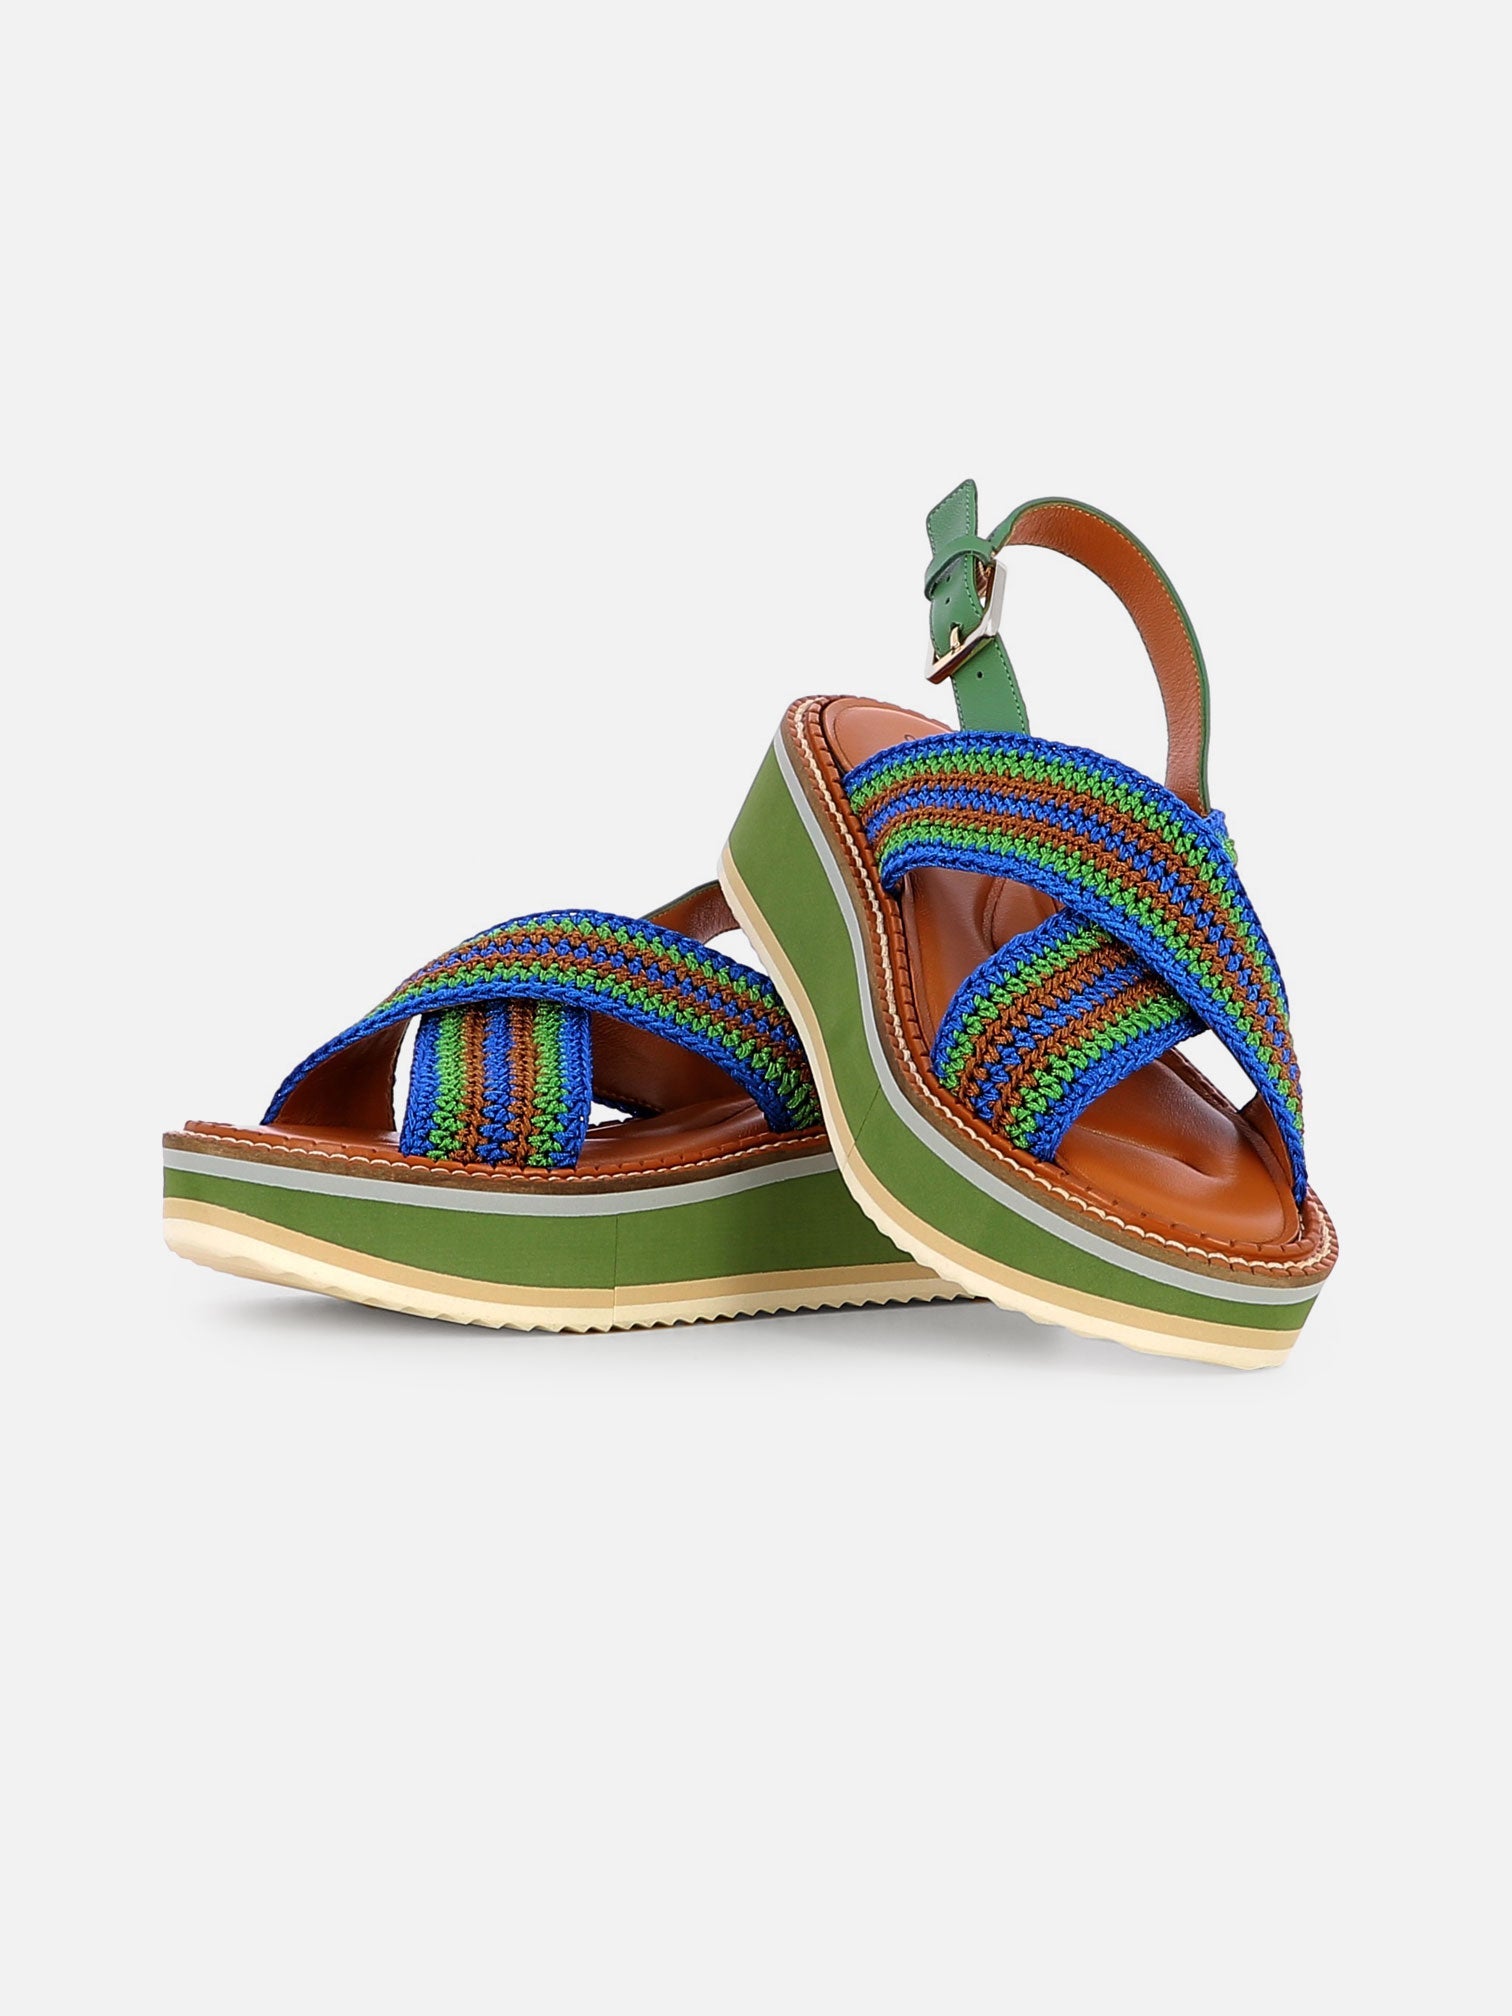 SANDALS - FADEN sandals, nil crochet - 3606063965699 - Clergerie Paris - Europe